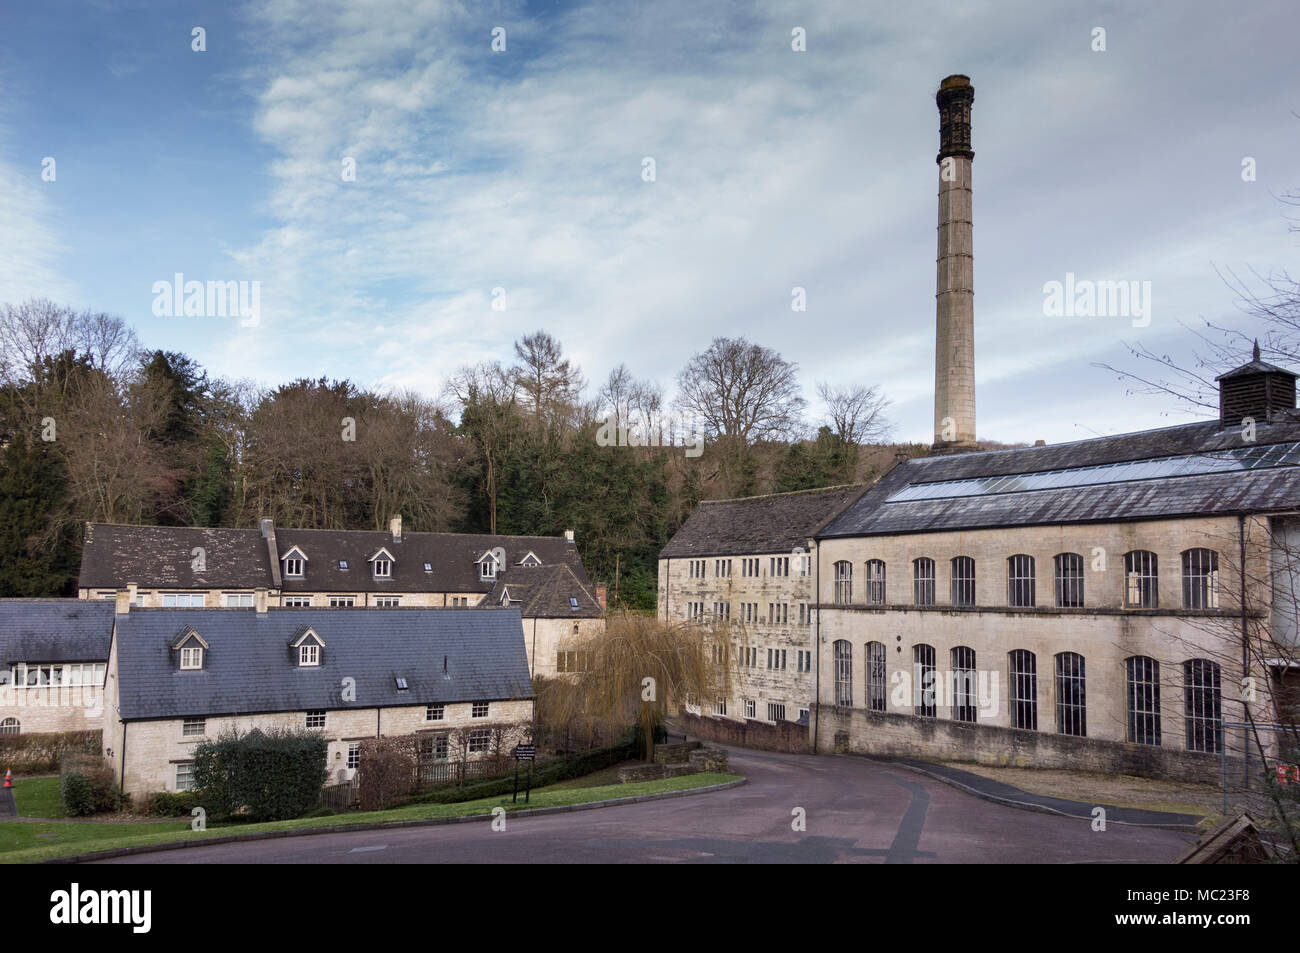 Der longfords Mühlengebäude in Nailsworth, Gloucestershire, UK. Ehemalige Mühle Gebäude sind jetzt zu Luxus Wohnungen, Häuser oder Wohnungen umgewandelt. Stockfoto